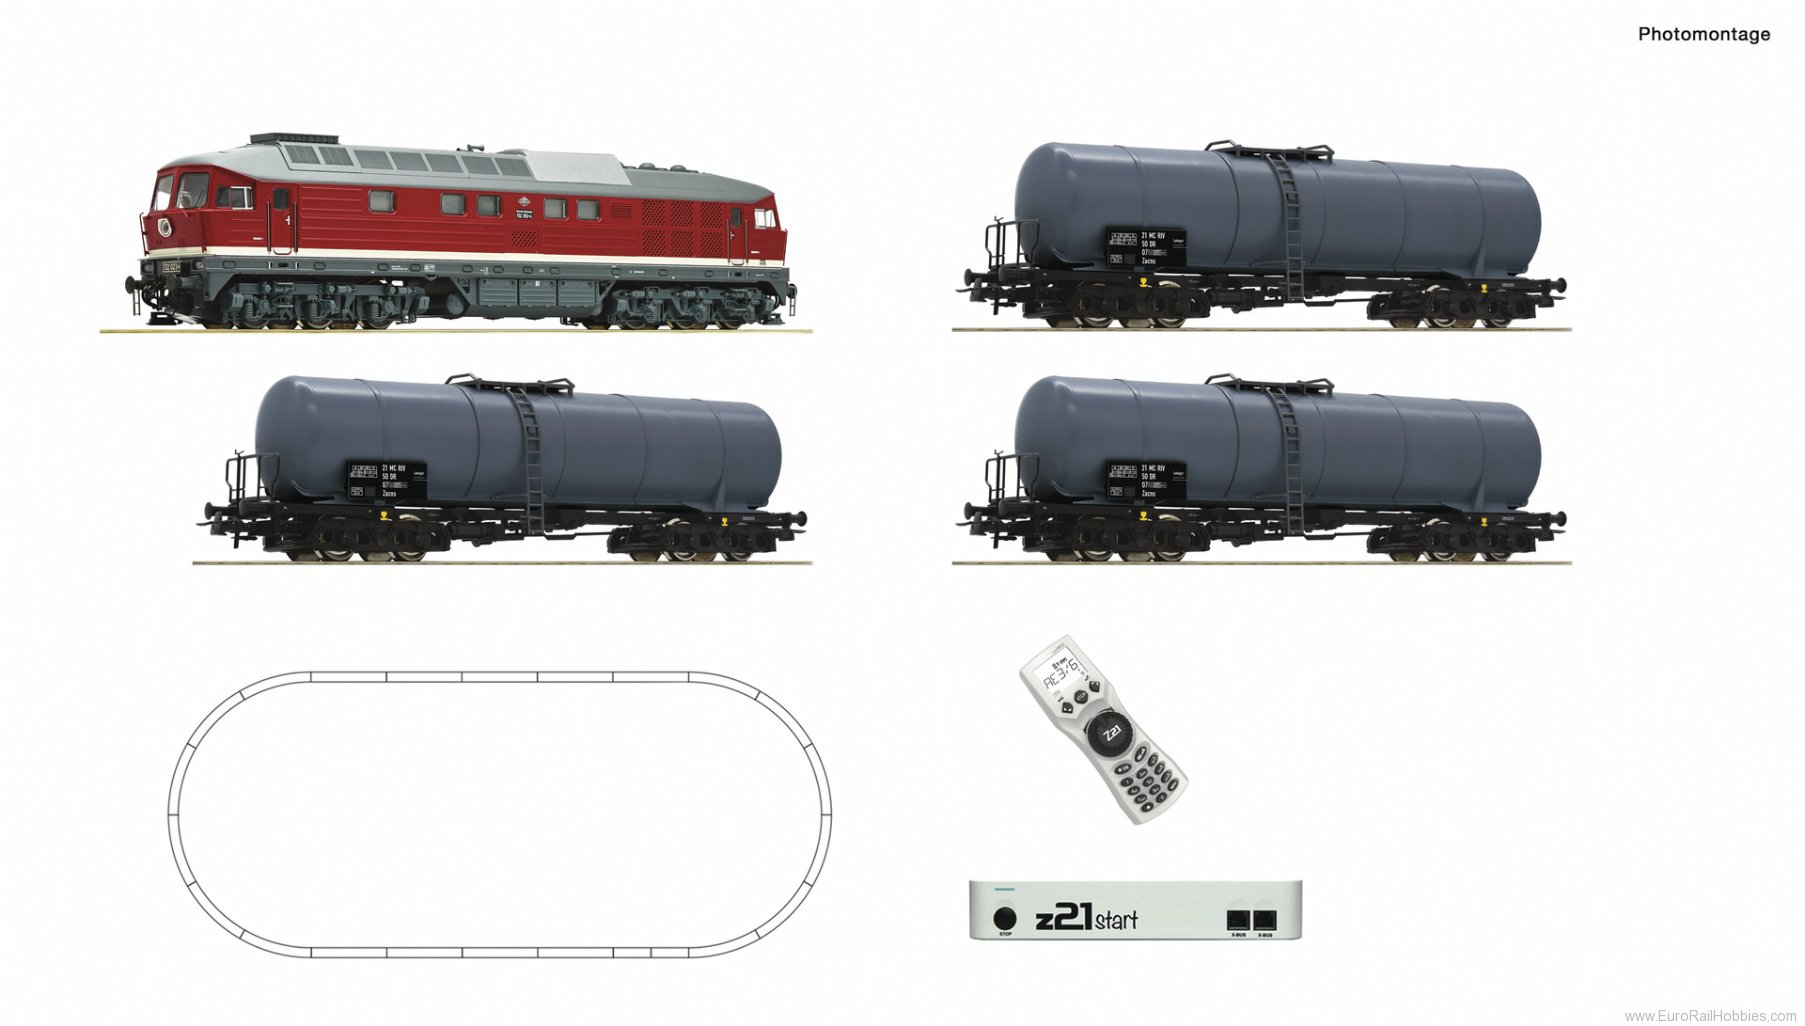 Roco 5110002 z21 start digital set: Diesel locomotive clas